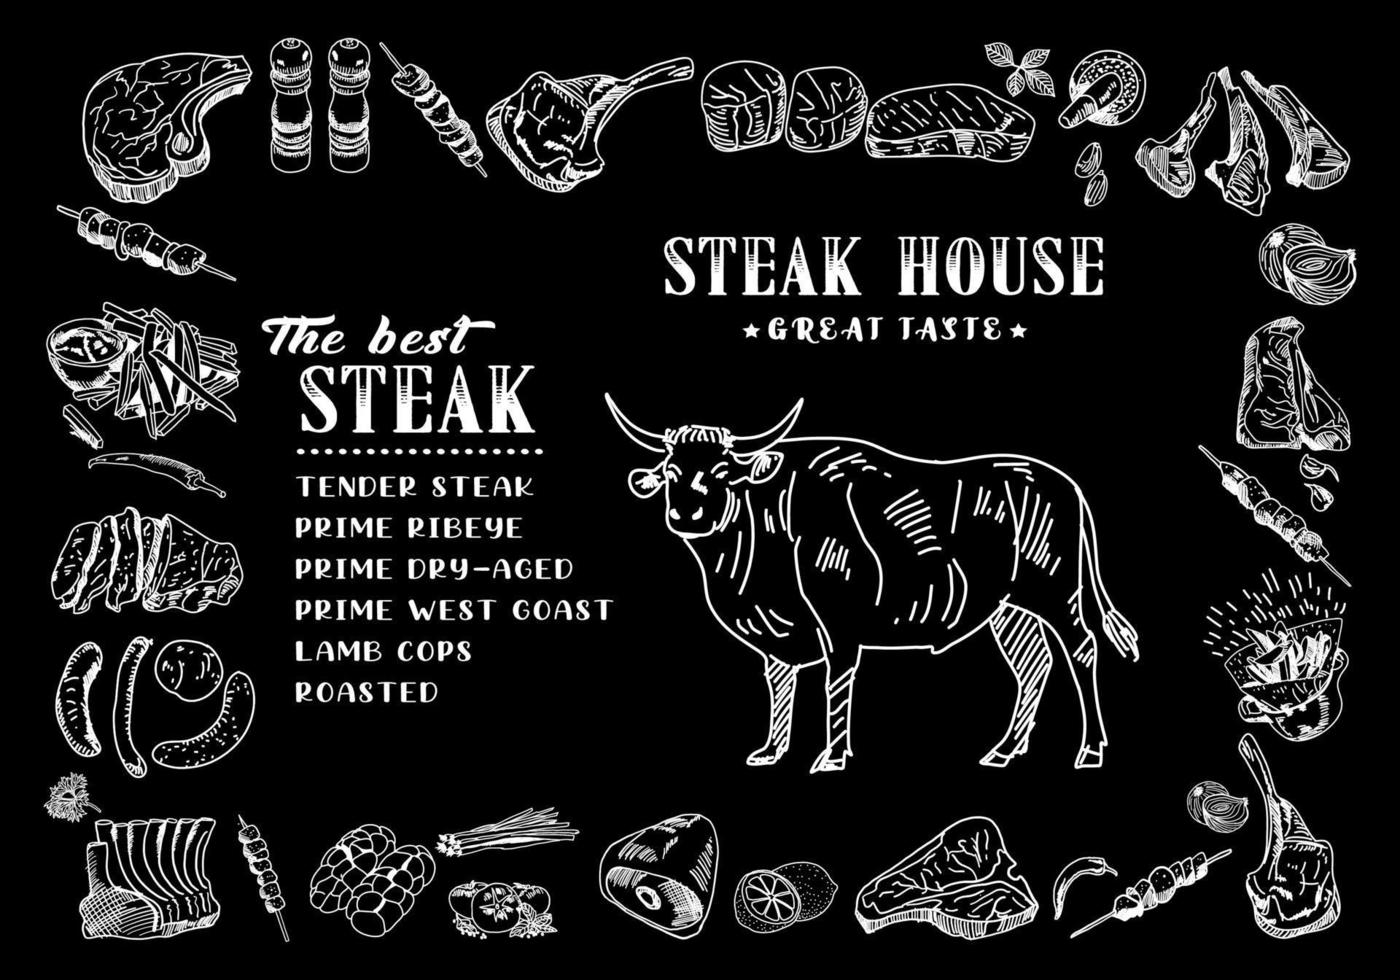 coleção de produtos de carne fresca. desenho ilustração vetorial. vetor